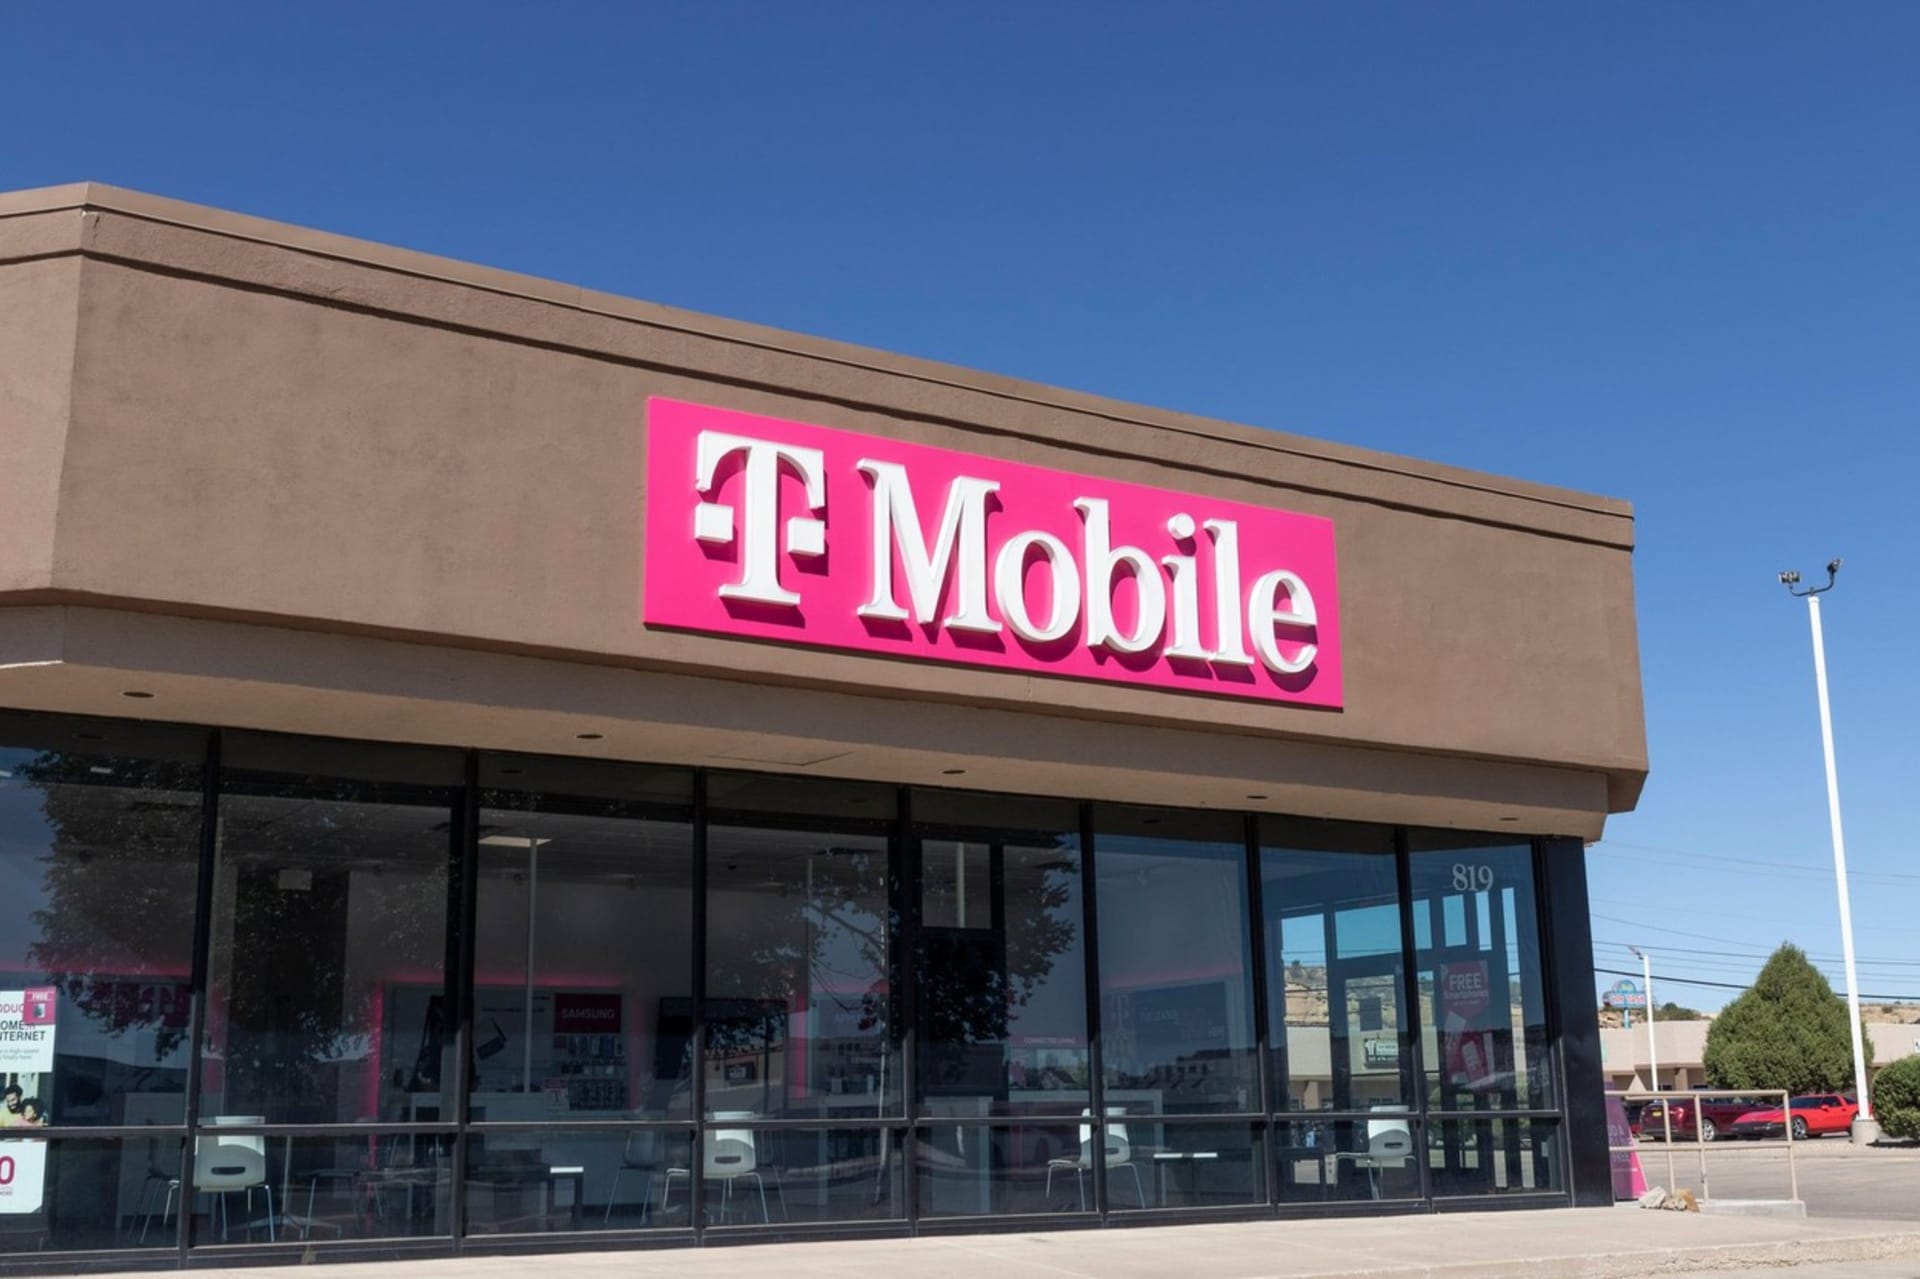 Mobilní operátor T-Mobile zřejmě čelí výpadku.